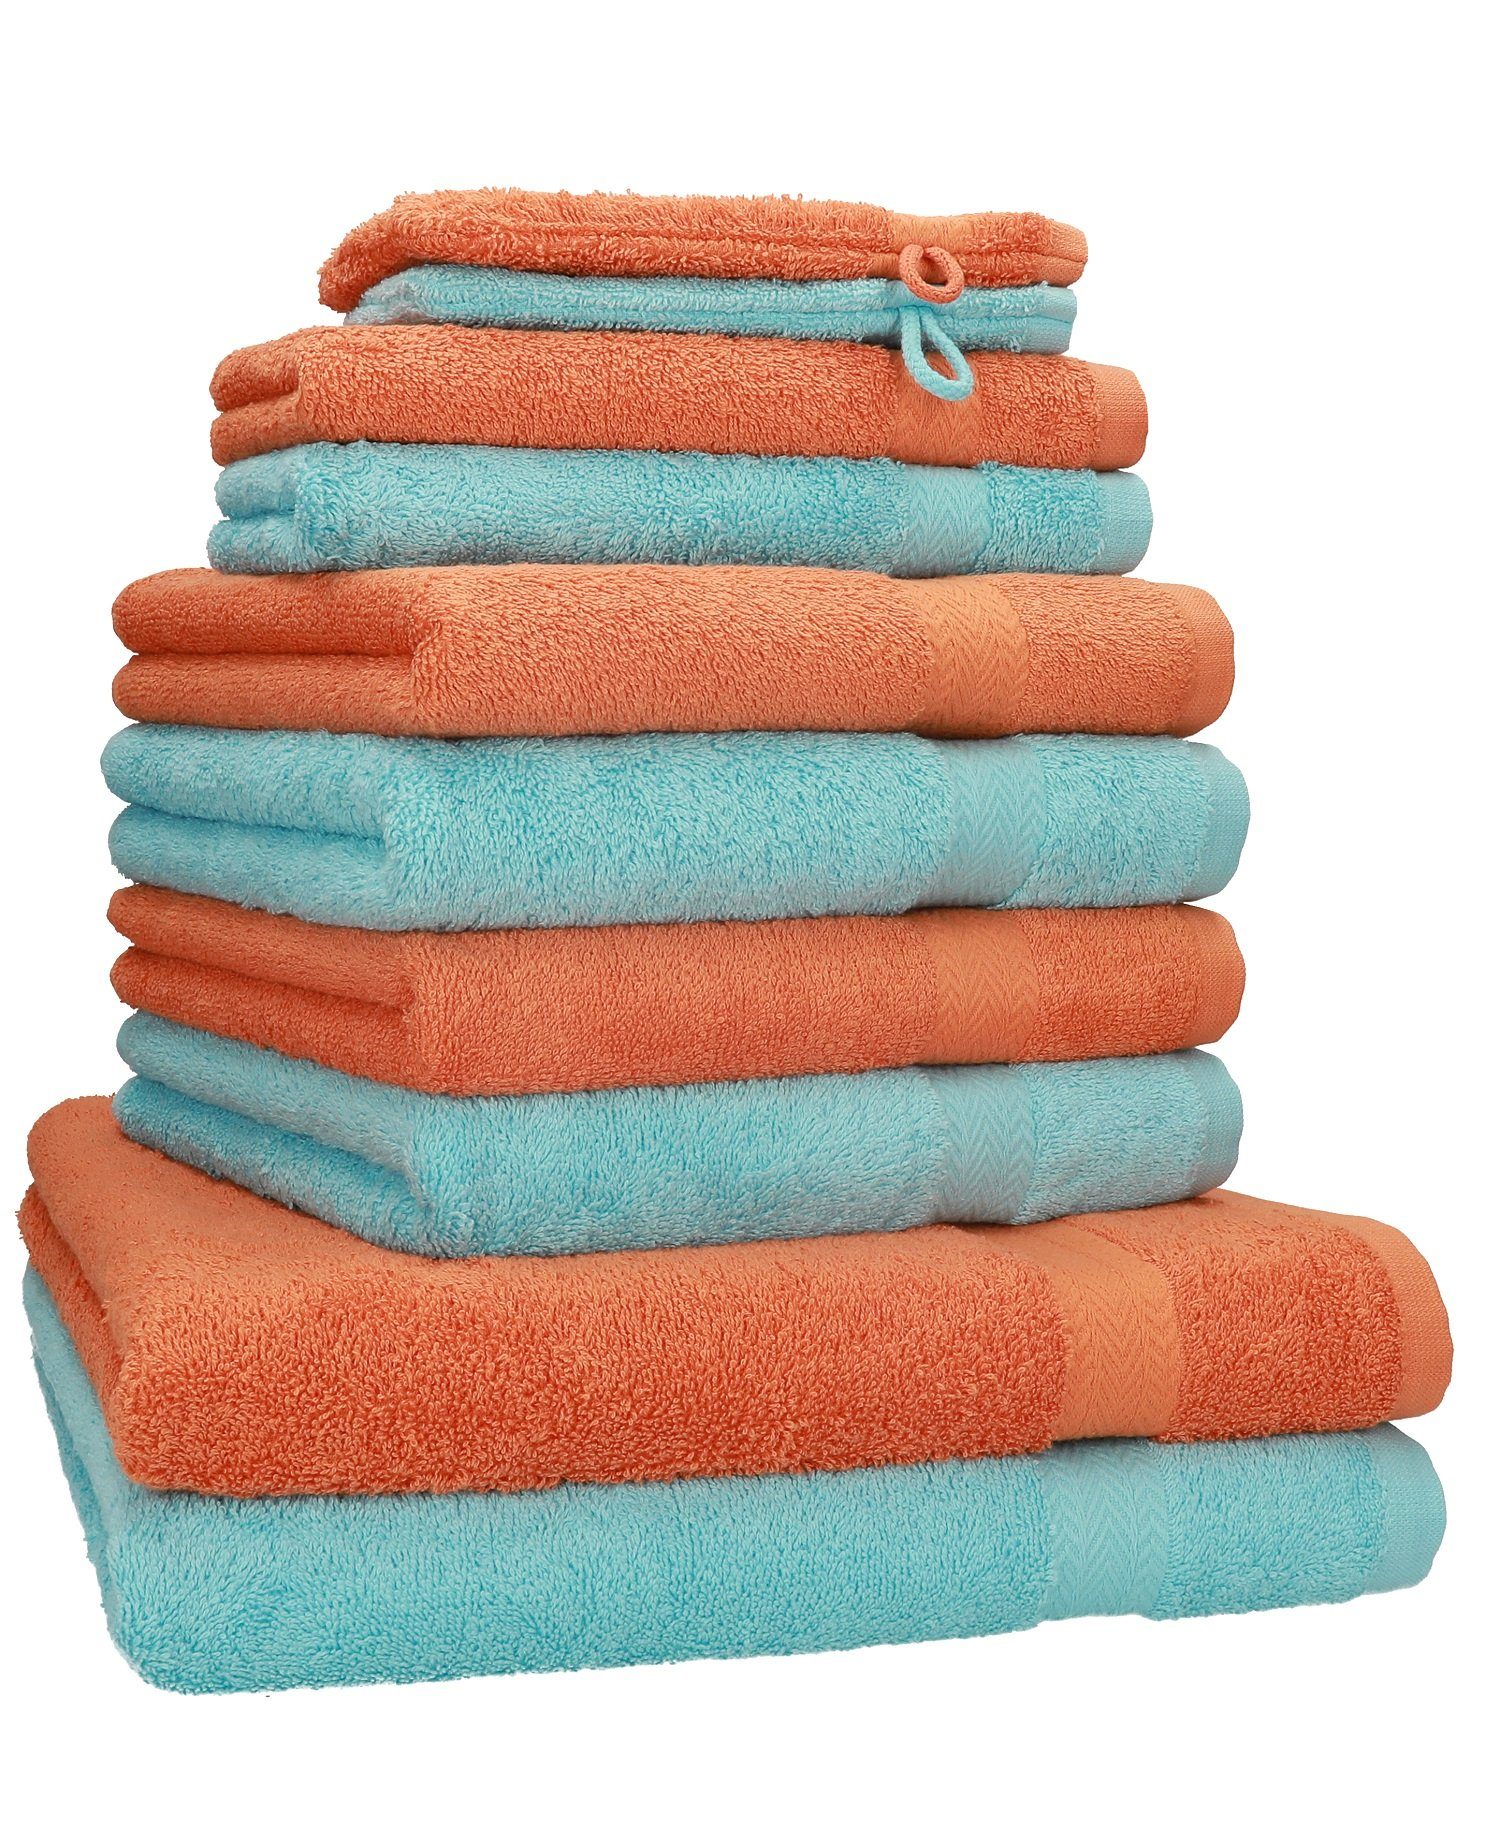 Betz Handtuch Set 10-TLG. Handtuch-Set Premium Farbe Orange & Türkis, 100% Baumwolle, (10-tlg)